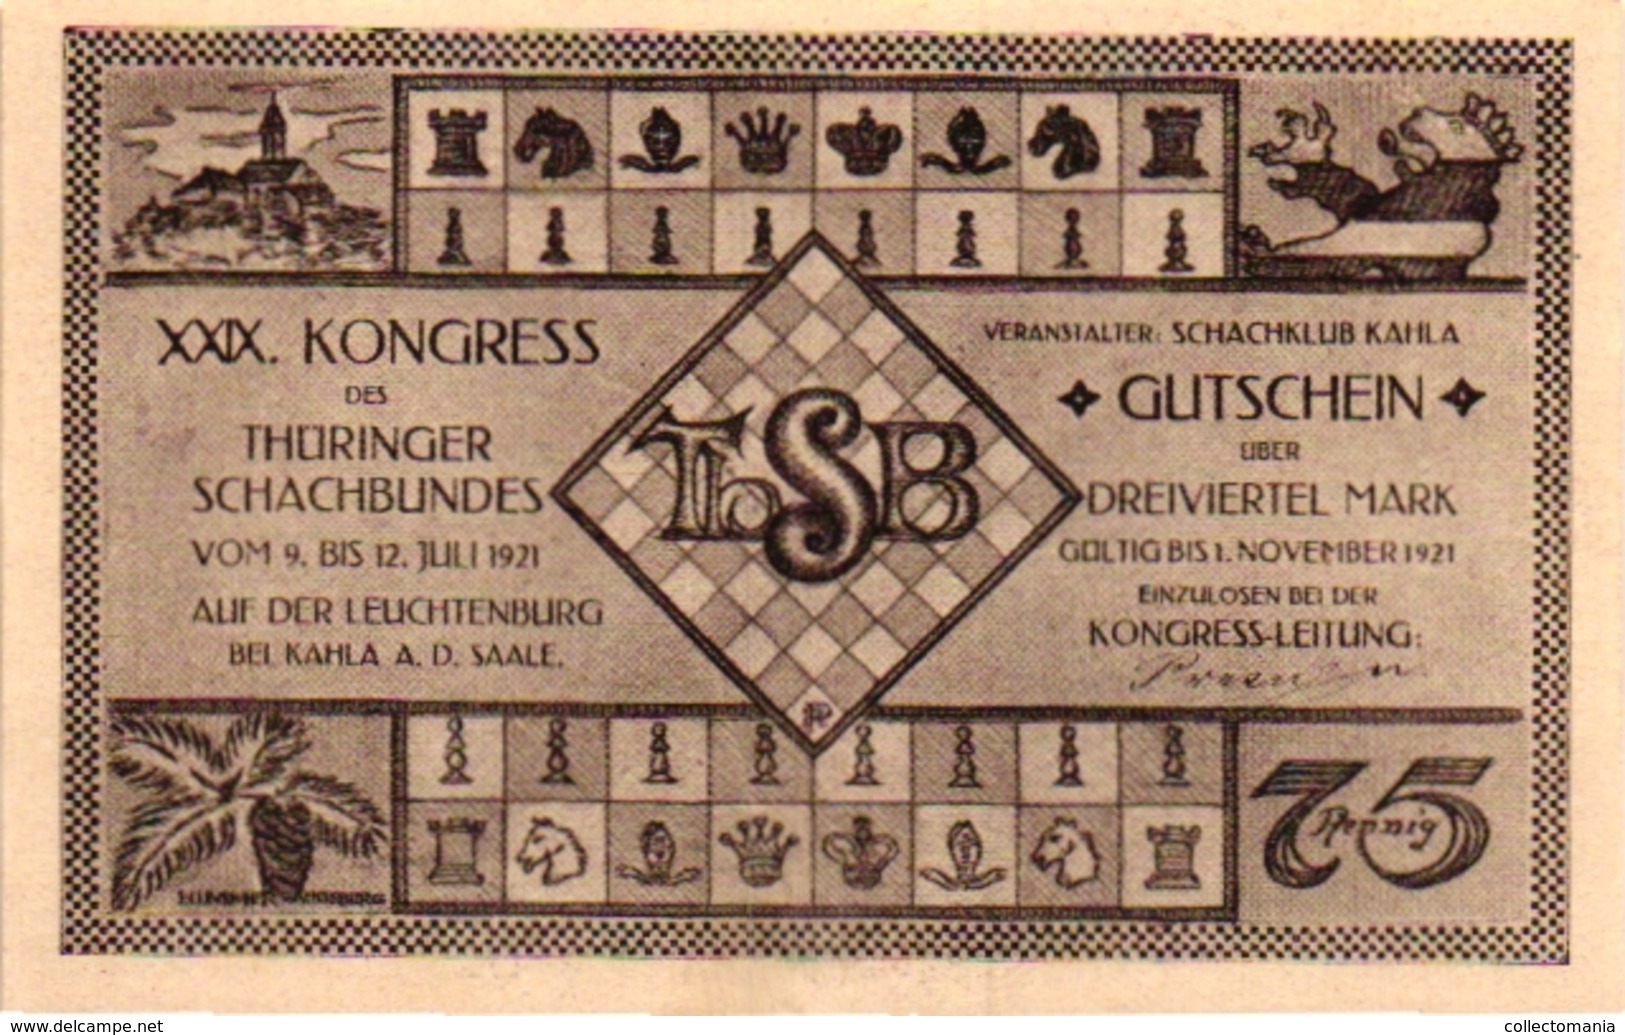 6 NOTGELD  CHESS ECHEC SCHACH  Die Welt-Schach -Partie Kongress Gutschein 1921 - Echecs